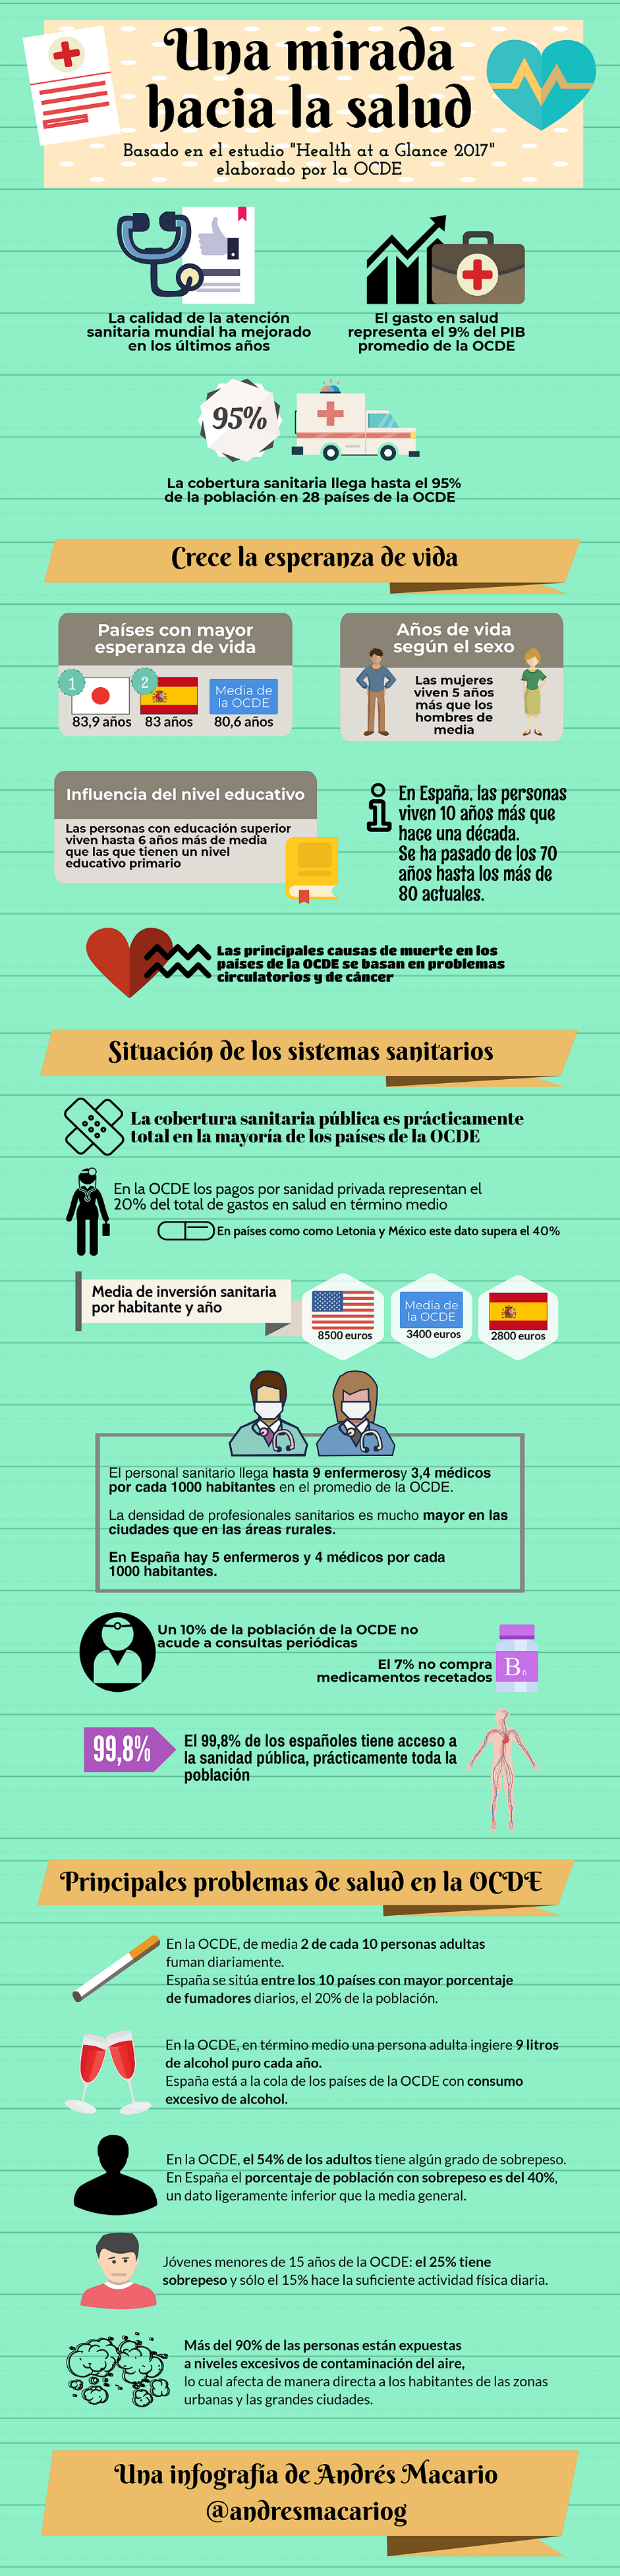 Una mirada hacia los sistemas de salud - Infografía Andrés Macario